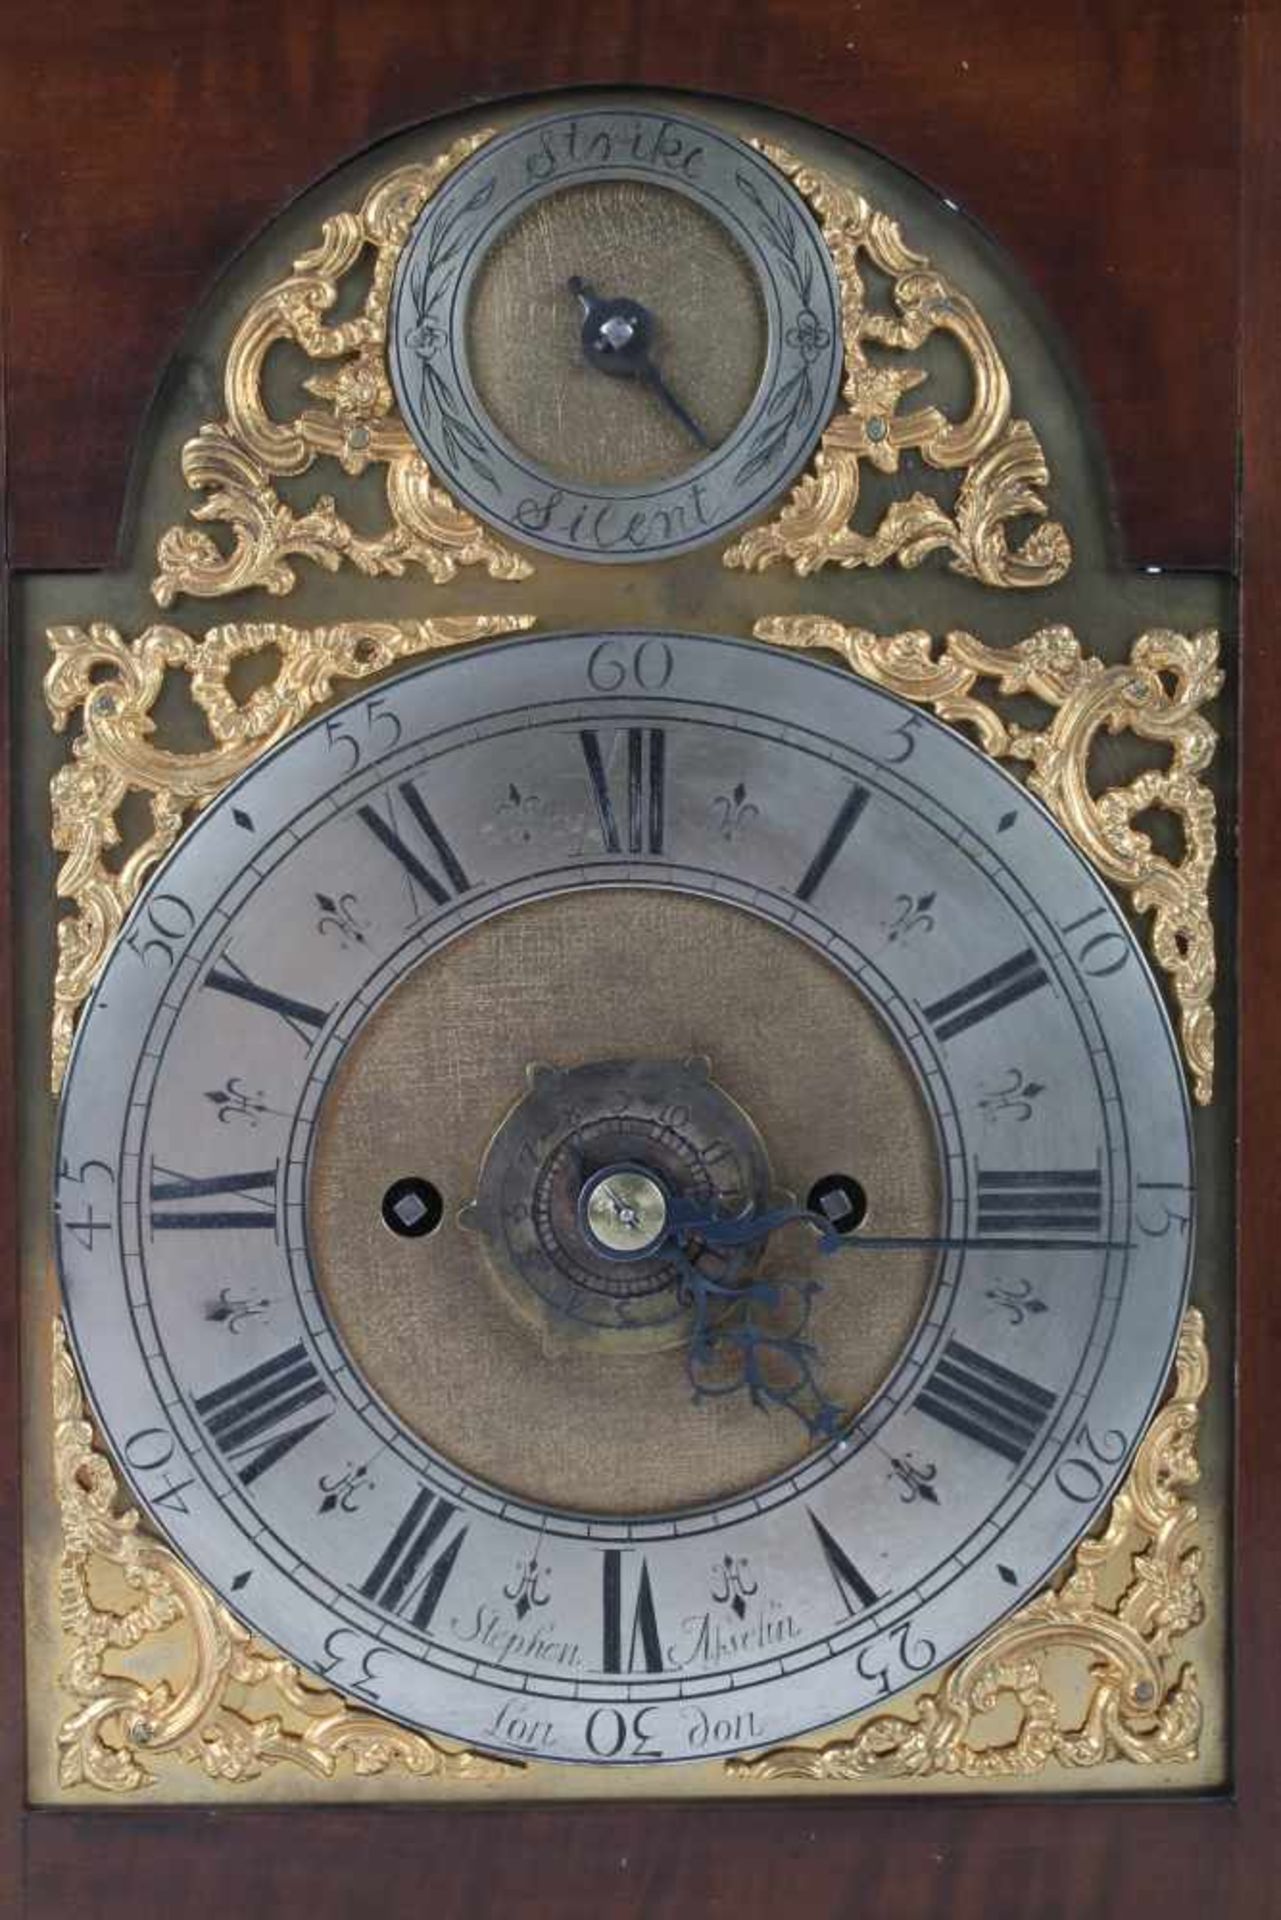 Stockuhr, London, bracket clock,Holzgehäuse m. Messingaplikken, verziertes Zifferblatt, bezeichnet - Bild 3 aus 6